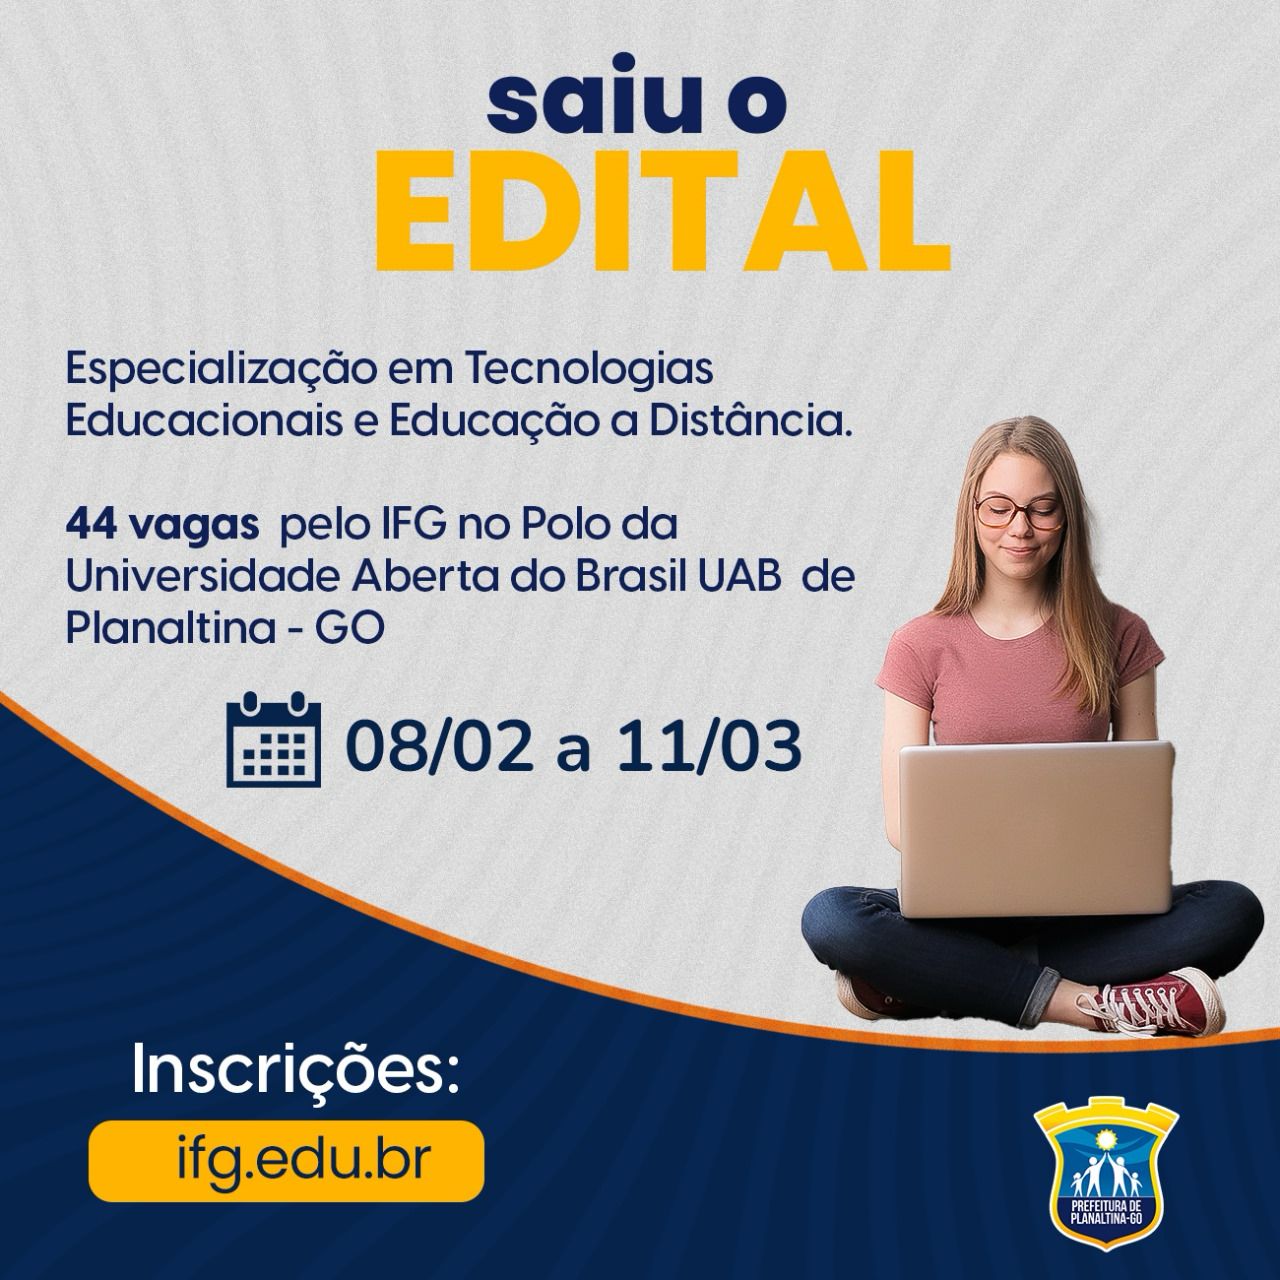 CURSO DE ESPECIALIZAÇÃO EM TECNOLOGIAS EDUCACIONAIS E EDUCAÇÃO A DISTÂNCIA